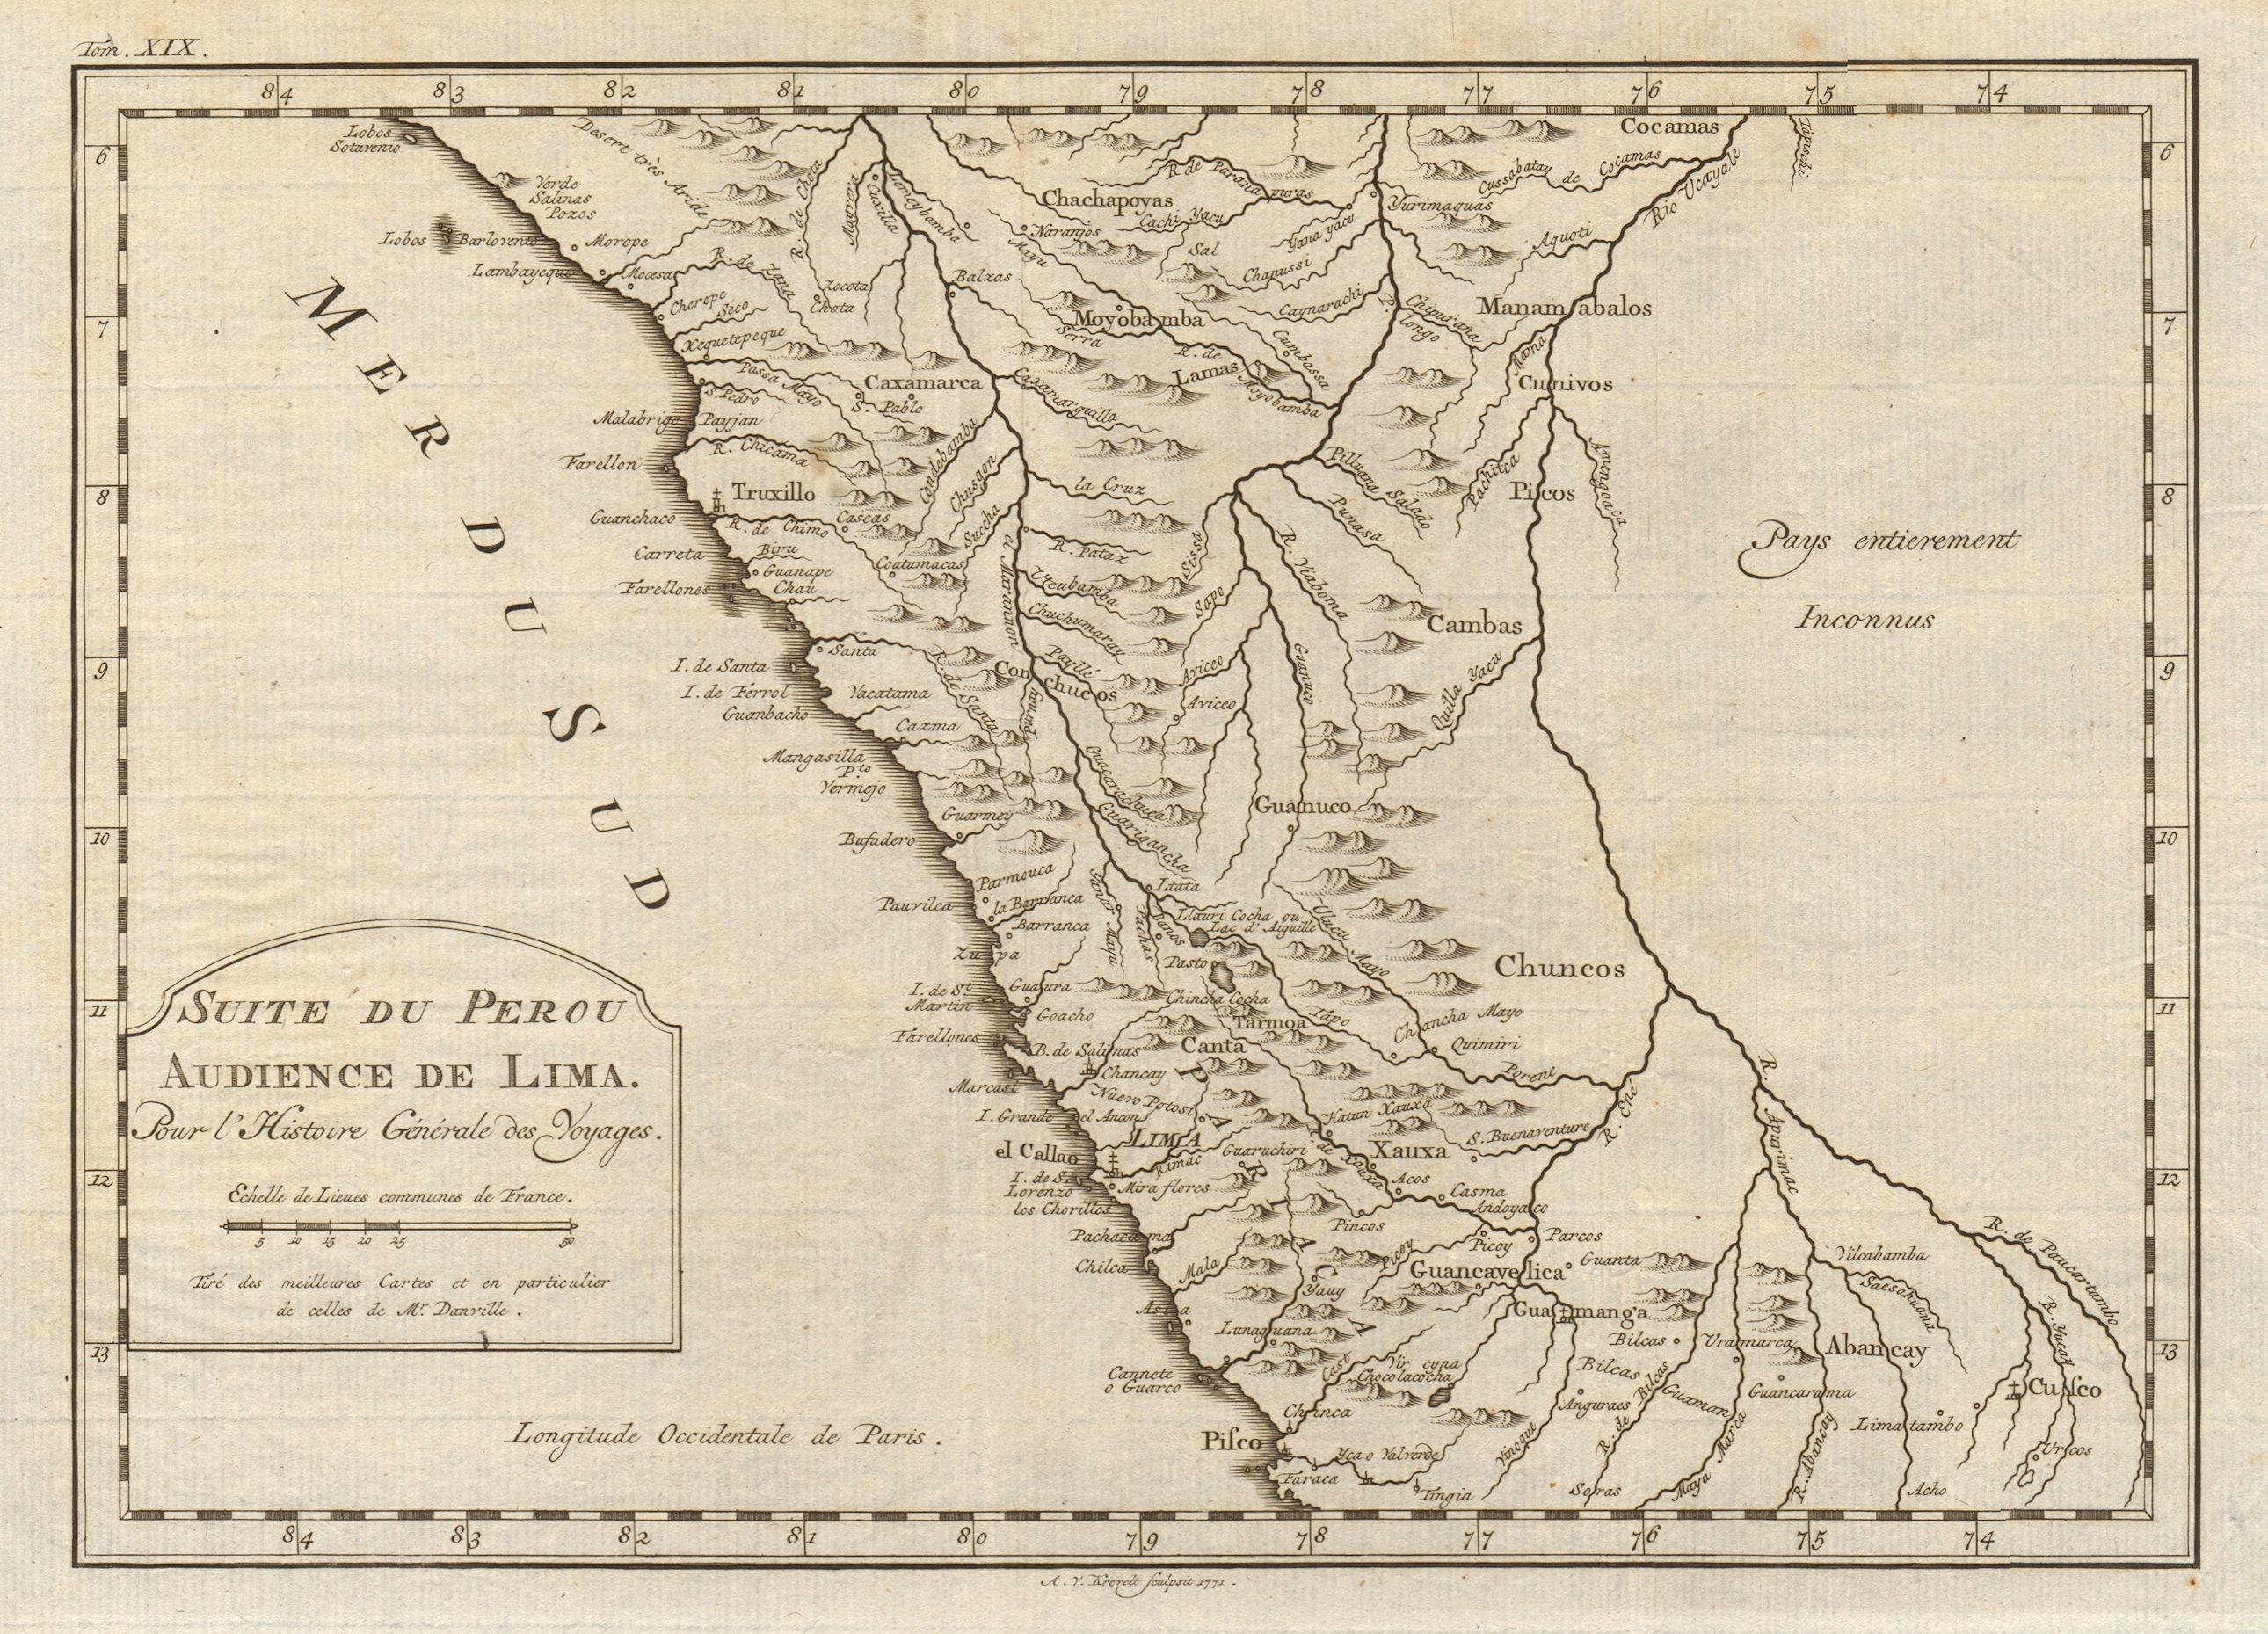 Associate Product 'Suite du Perou. Audience de Lima'. Peru. BELLIN/SCHLEY 1772 old antique map